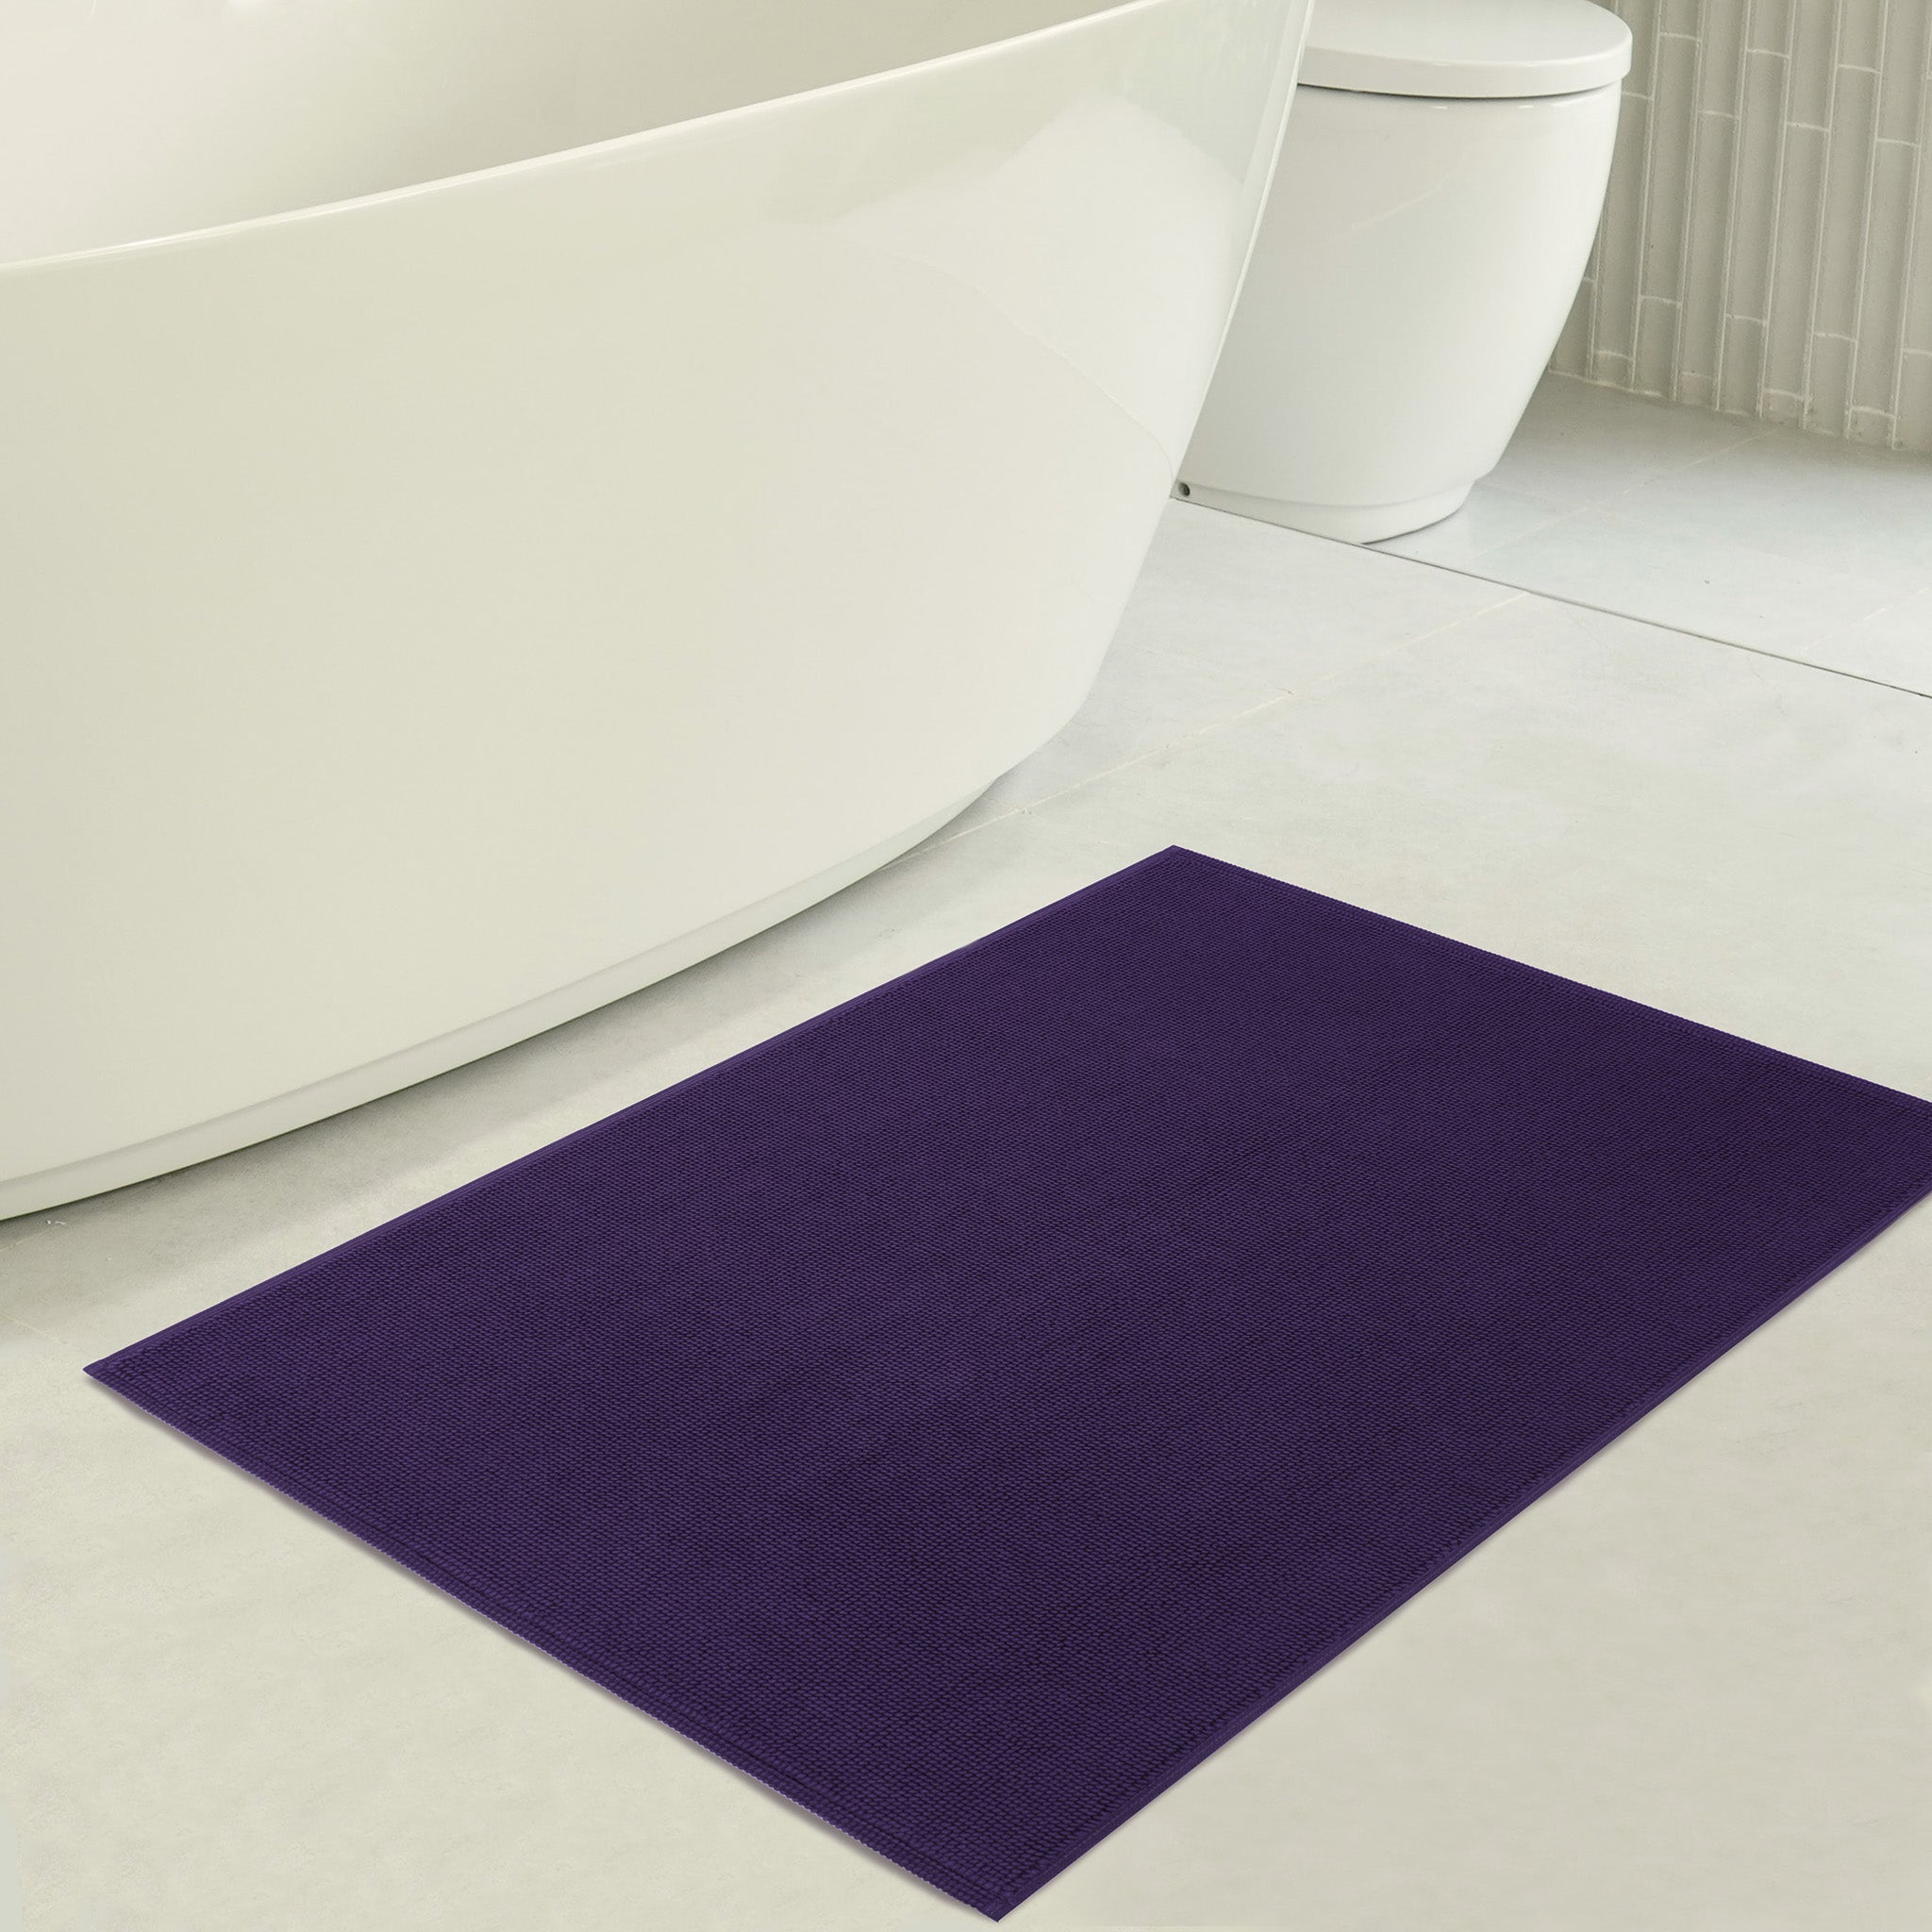 American Soft Linen 100% Cotton Non-Slip 17x24 Inch Bath Rug Wholesale purple-3